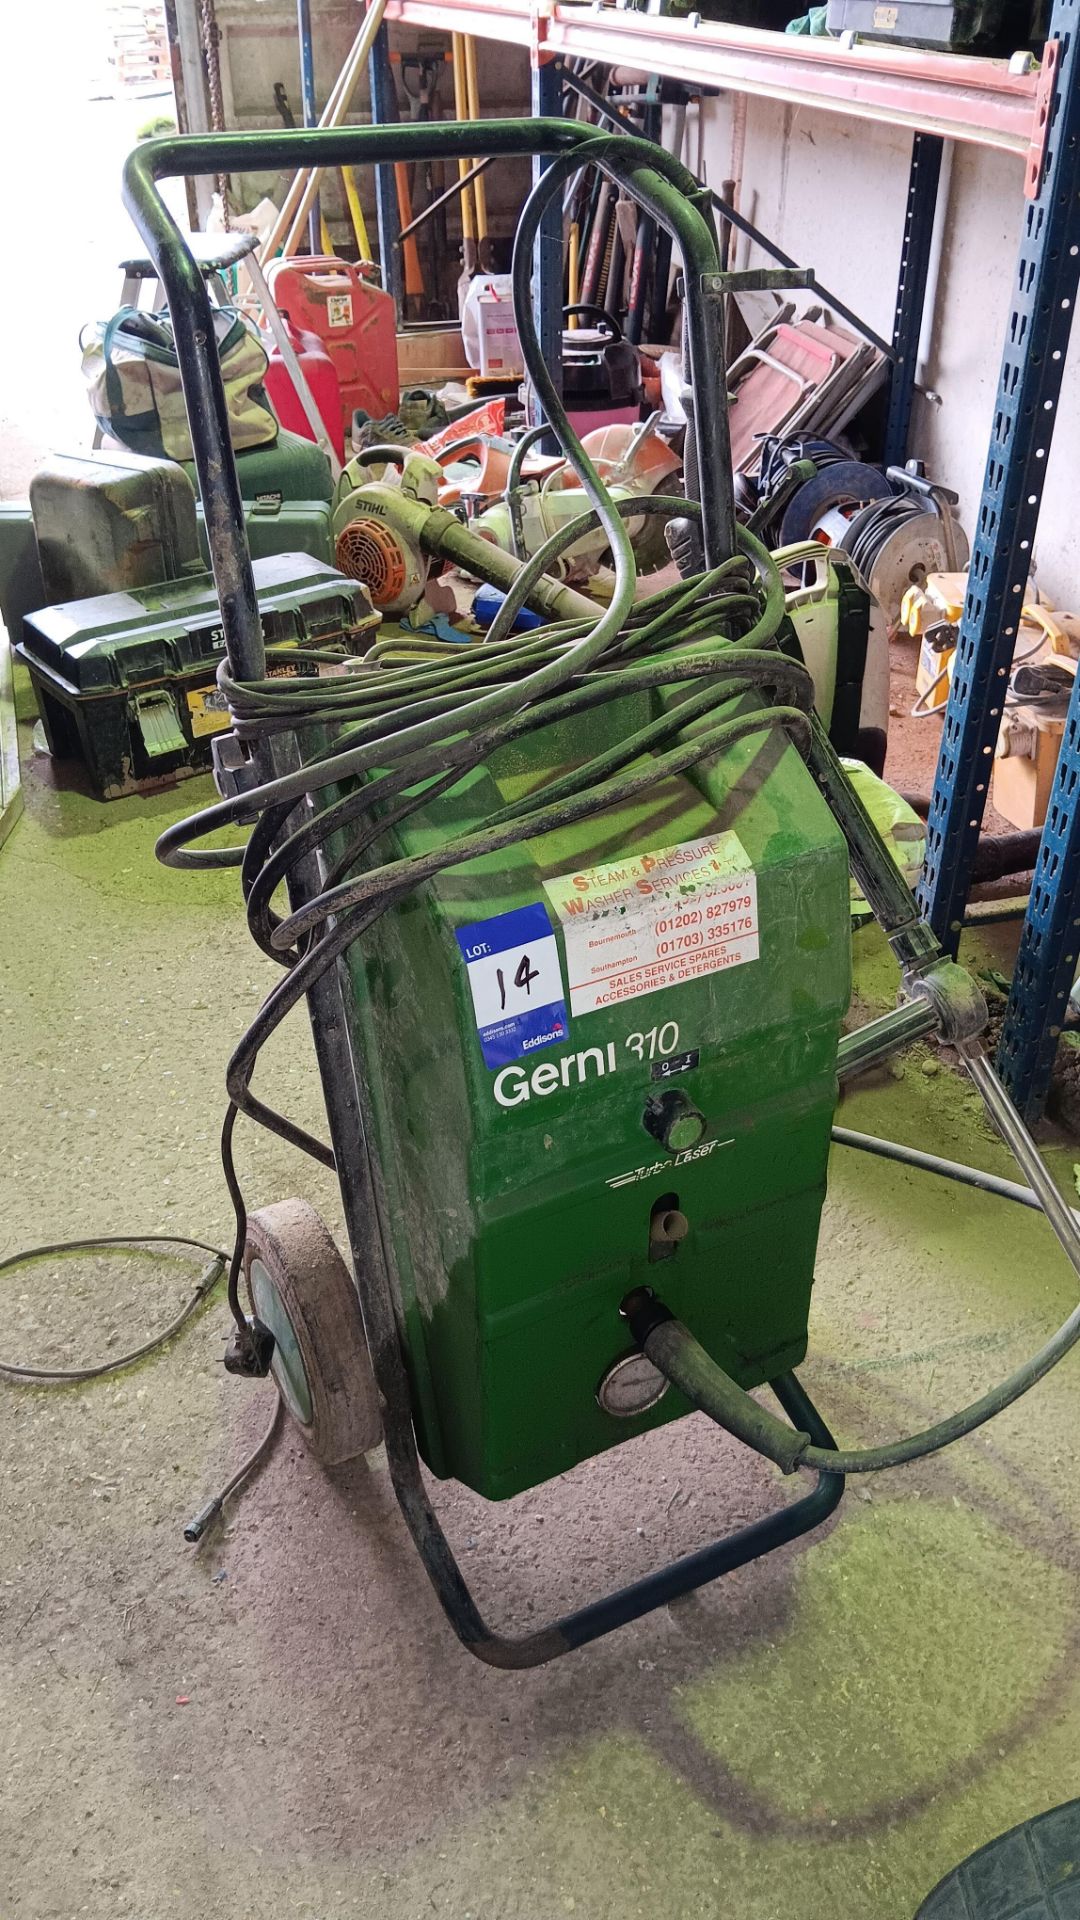 Nilfisk Terbo Laser Gerni G310 pressure washer, serial number 519609005881 (1996)